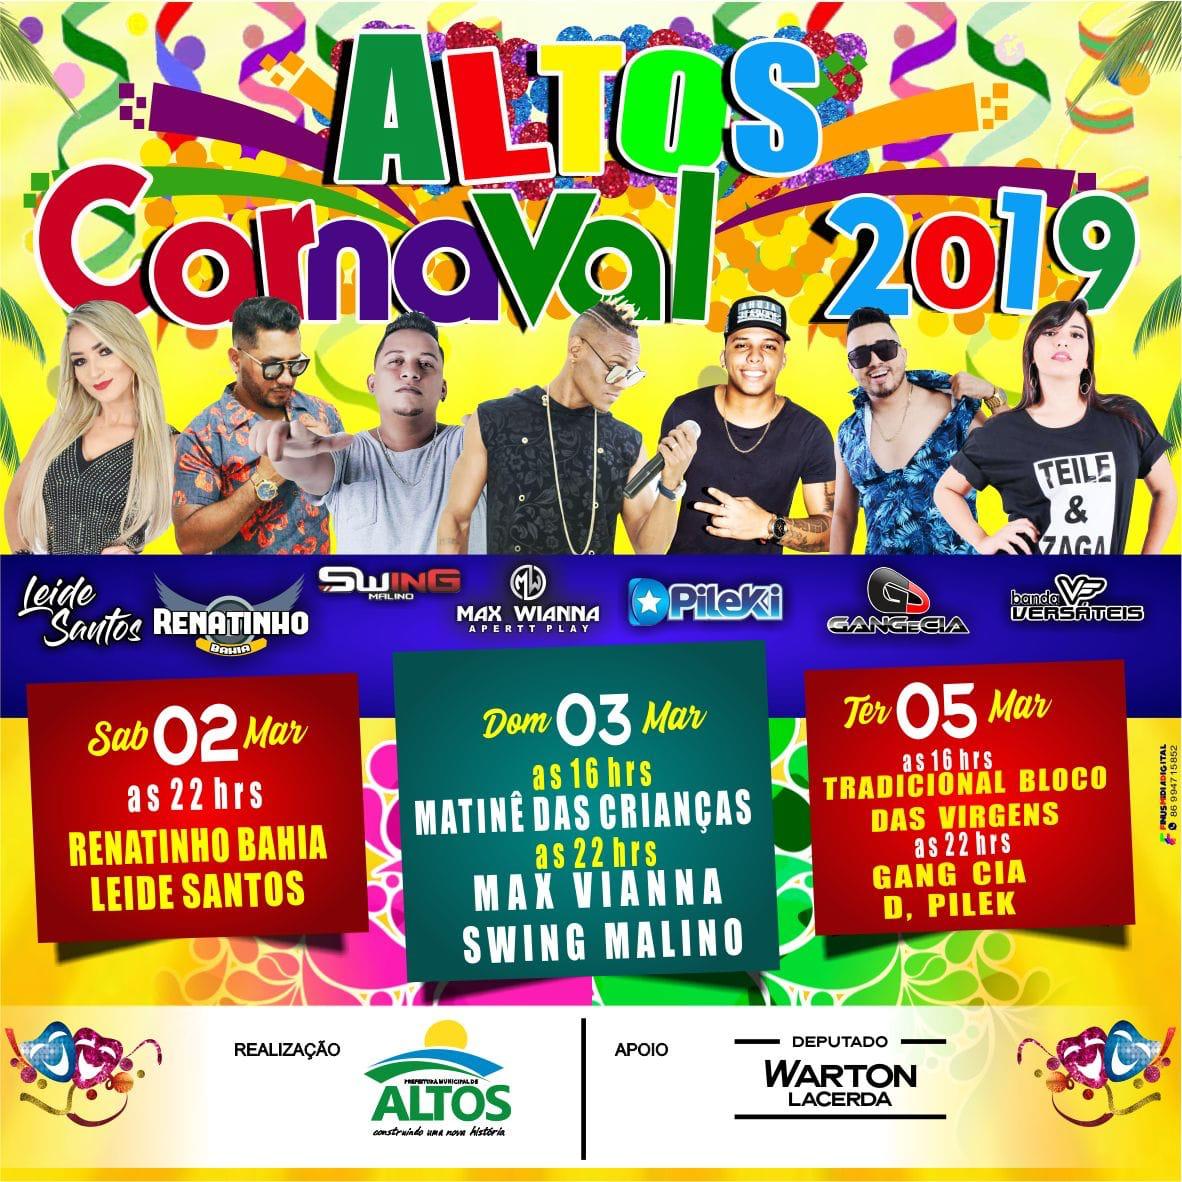 Carnaval 2019 de Altos